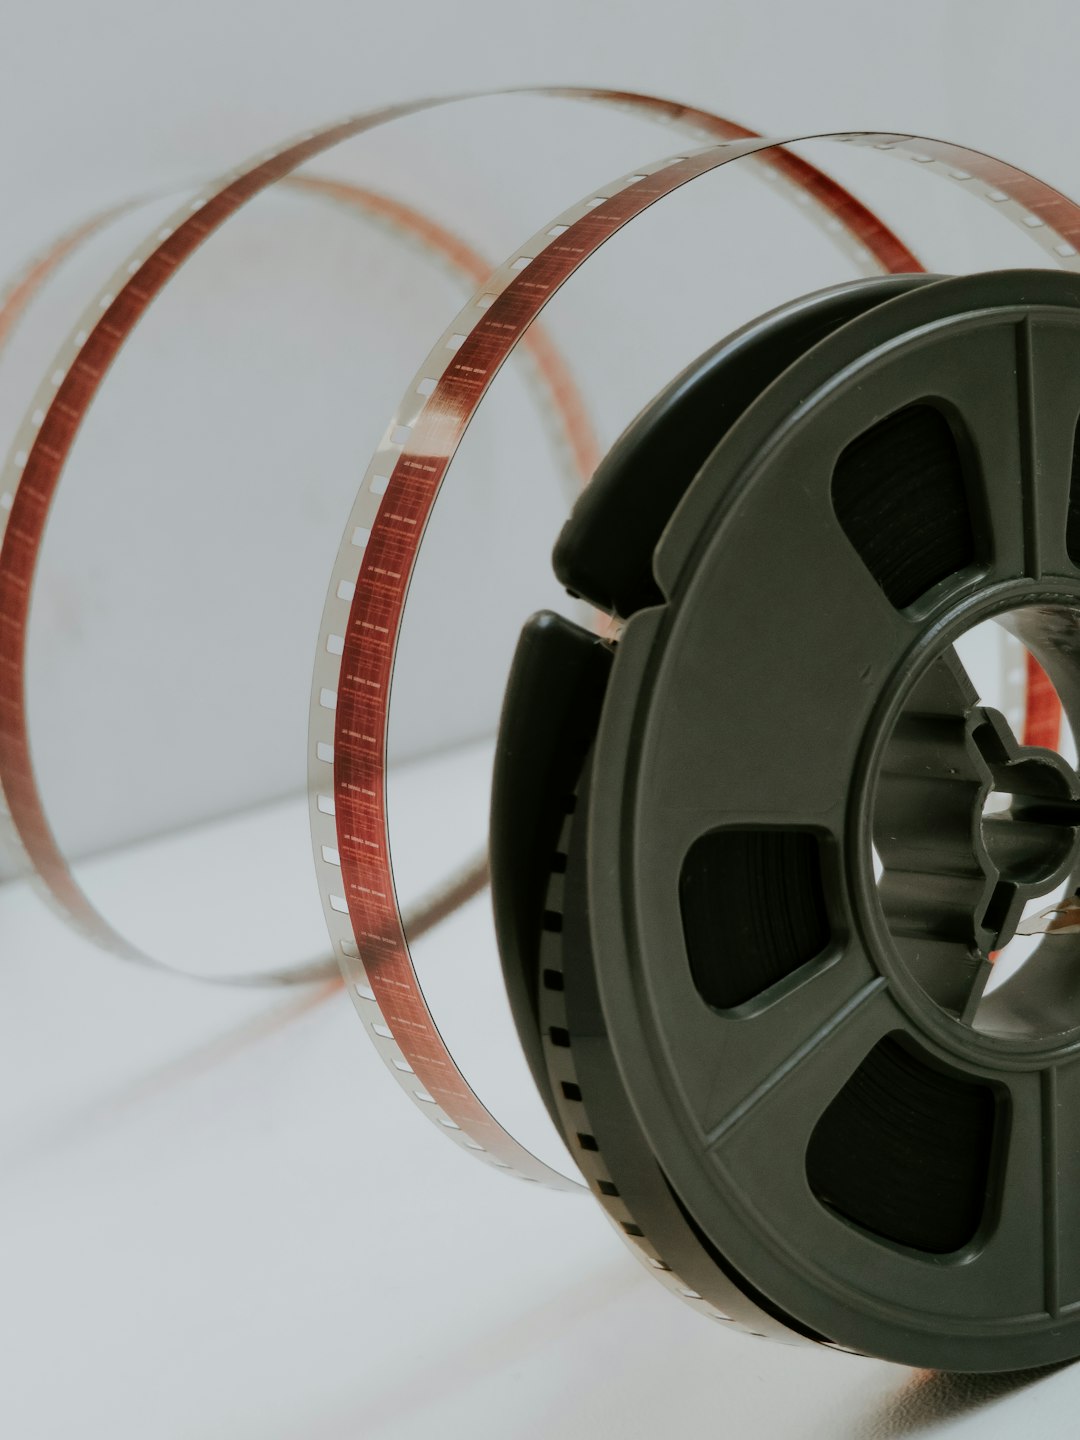 중국의 영화적 경이로움을 탐험하세요: 최근작에 대한 심층 분석